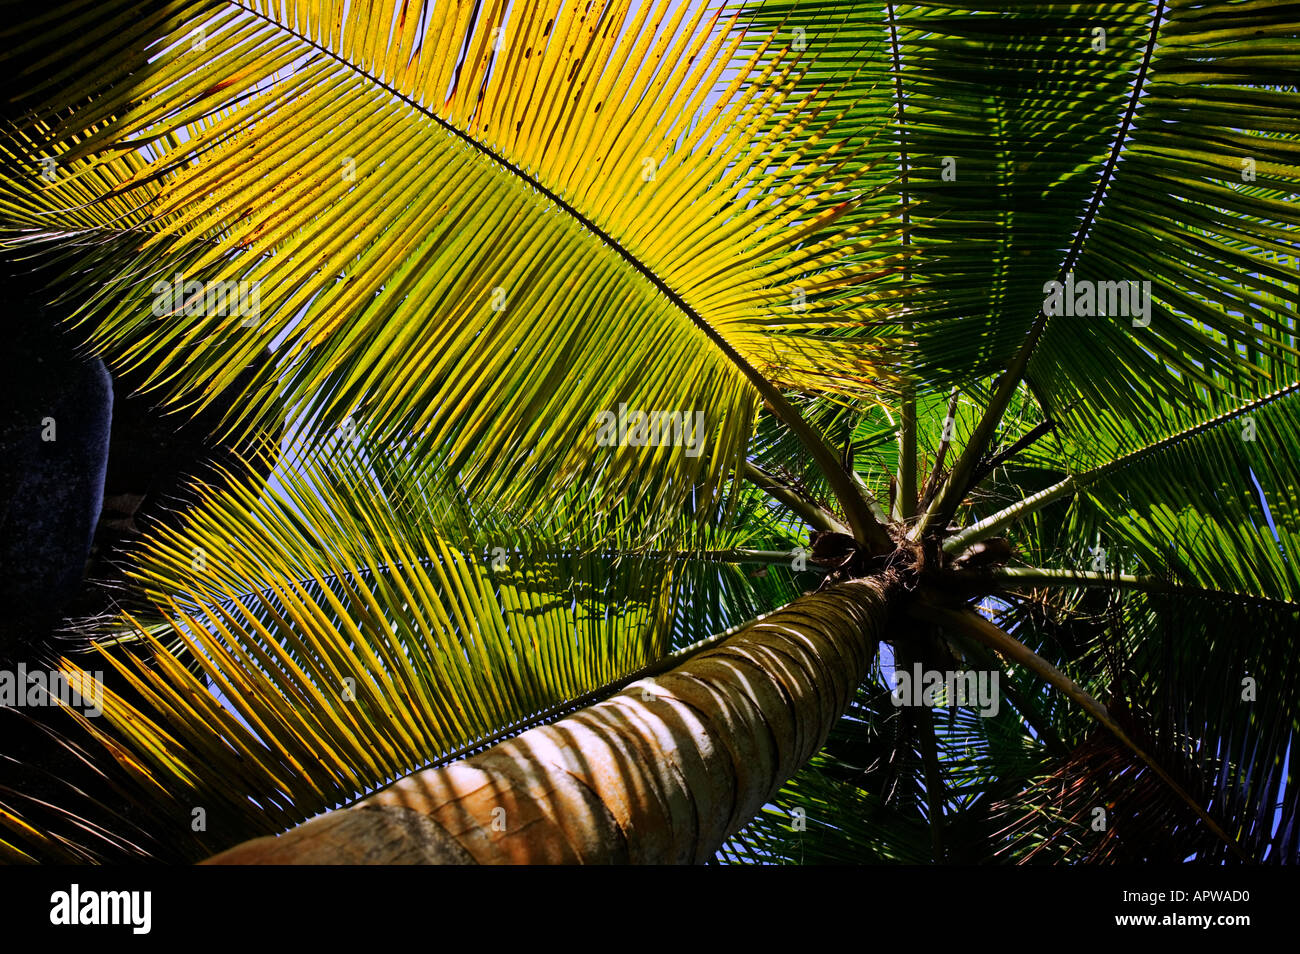 Palmier Cocotier Cocos nucifera Seychelles Dist les climats tropicaux dans le monde entier Banque D'Images